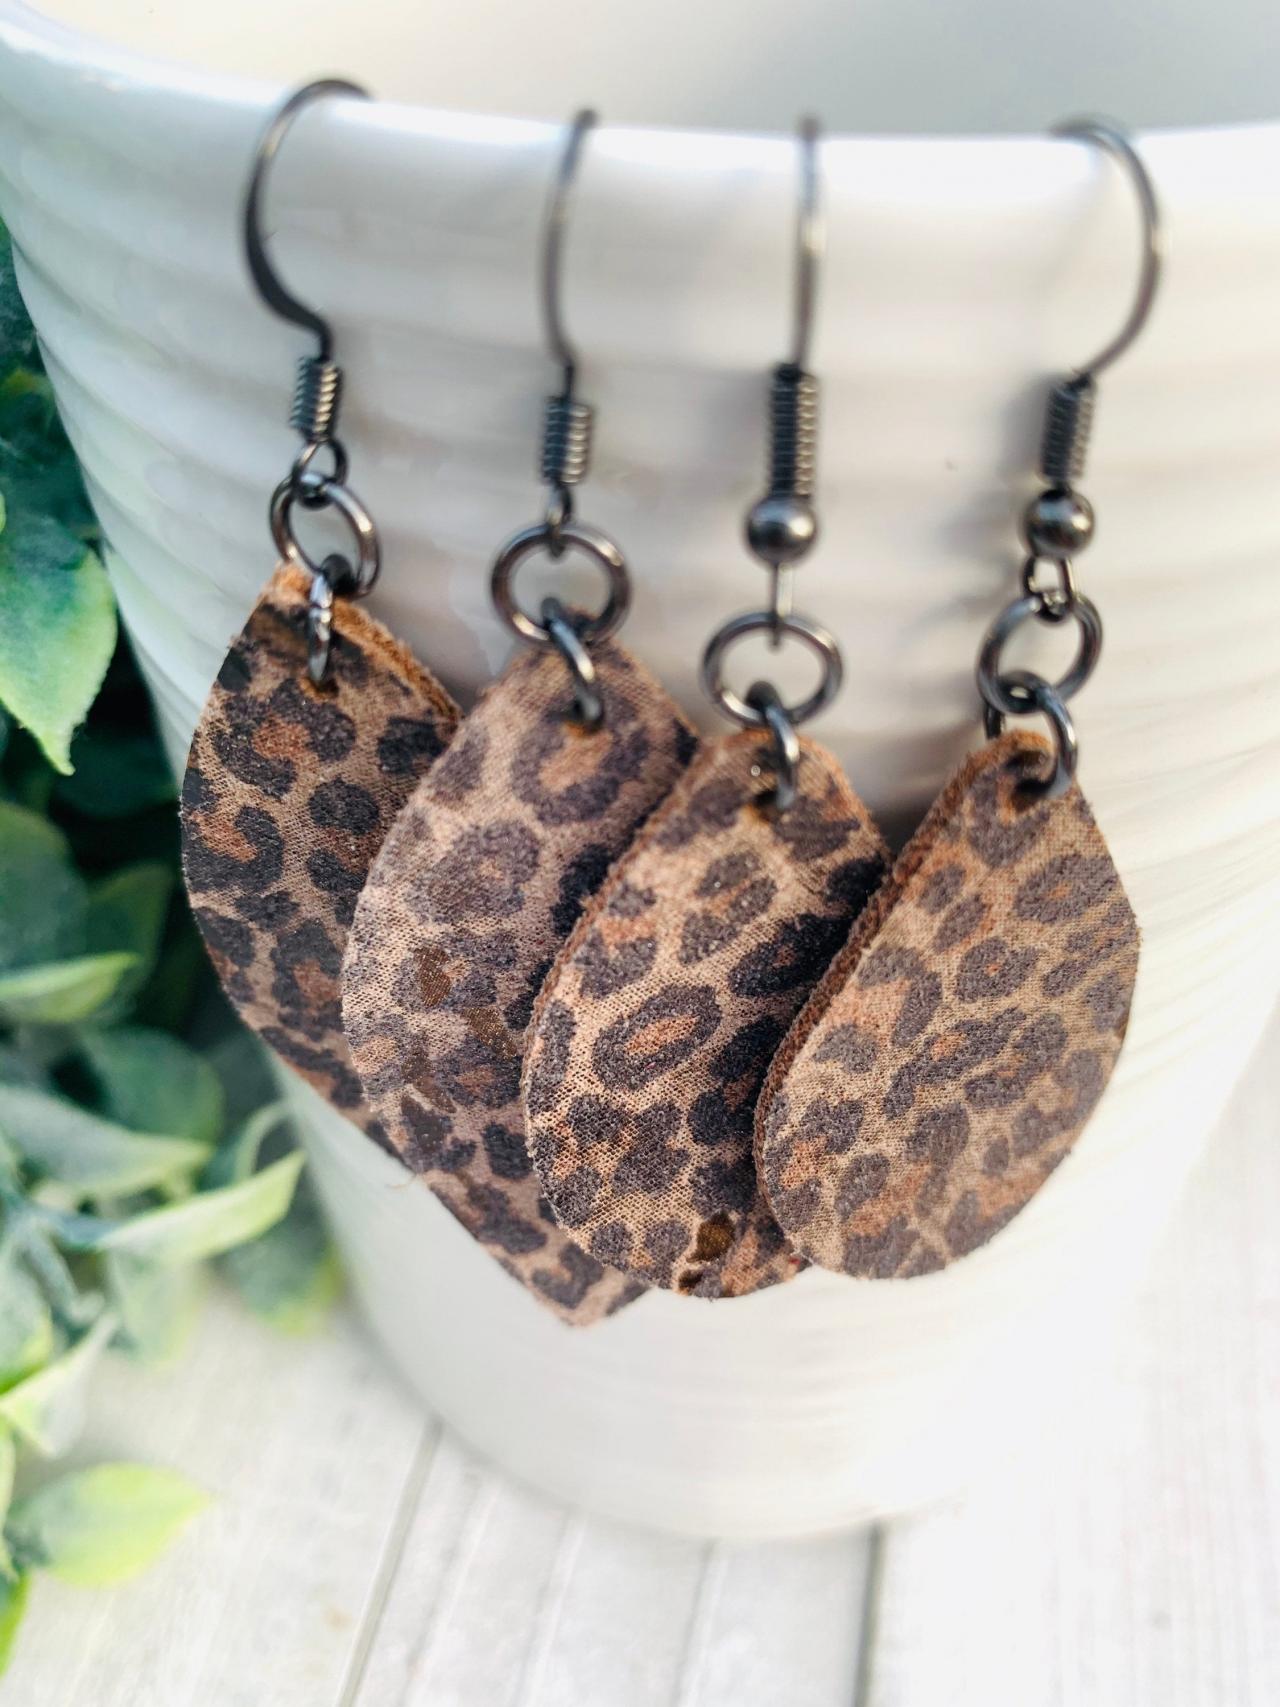 Leopard Leather Earrings | Leather Earrings | Teardrop Earrings | Genuine Leather Earrings